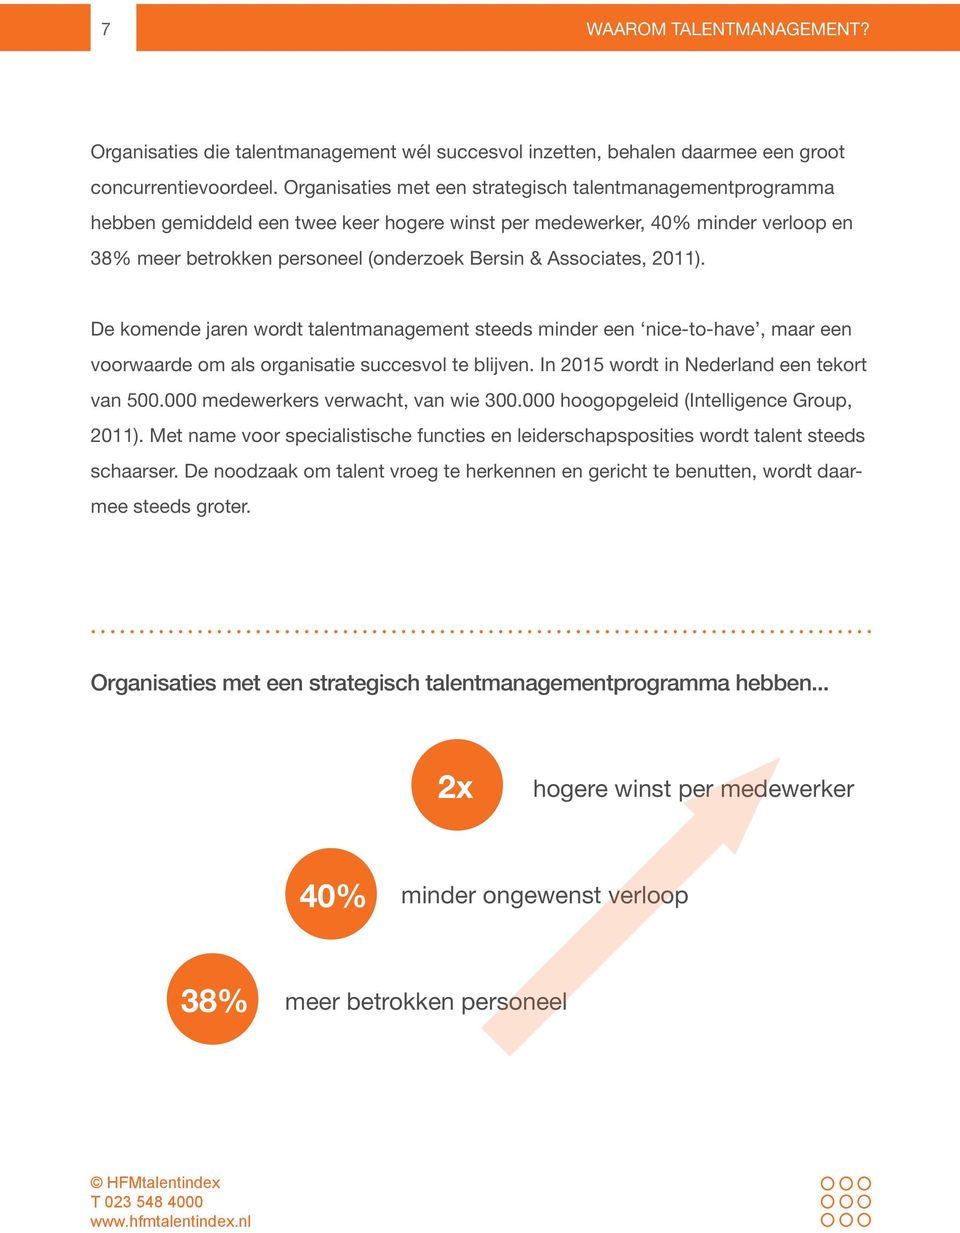 Associates, 2011). De komende jaren wordt talentmanagement steeds minder een nice-to-have, maar een voorwaarde om als organisatie succesvol te blijven. In 2015 wordt in Nederland een tekort van 500.